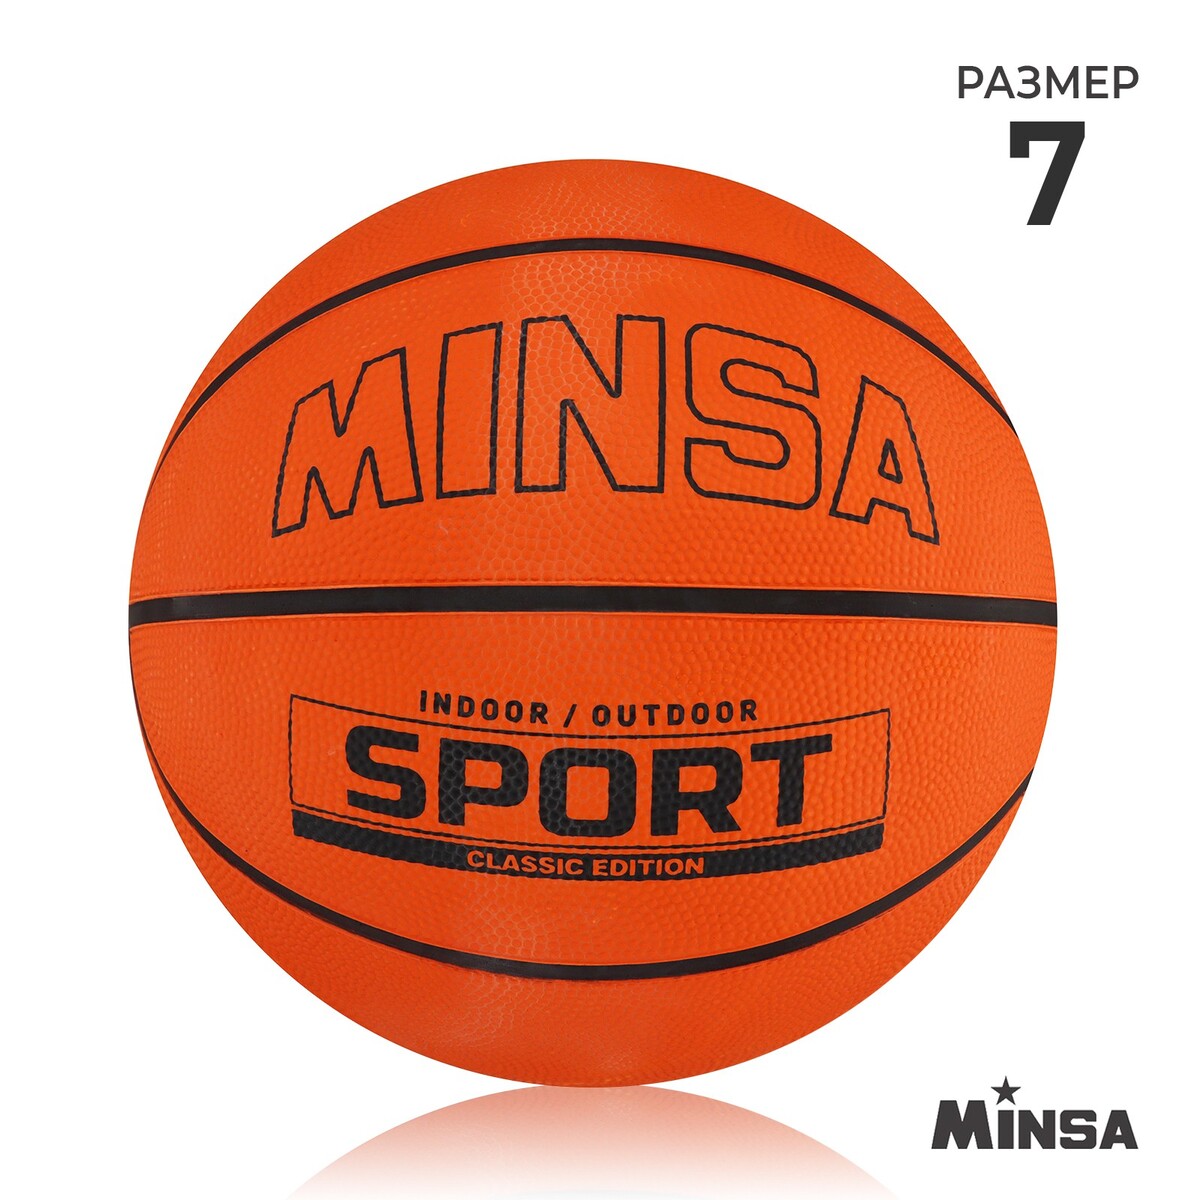 Мяч баскетбольный minsa sport, пвх, клееный, 8 панелей, р. 7 мяч баскетбольный minsa street пвх клееный 8 панелей р 7